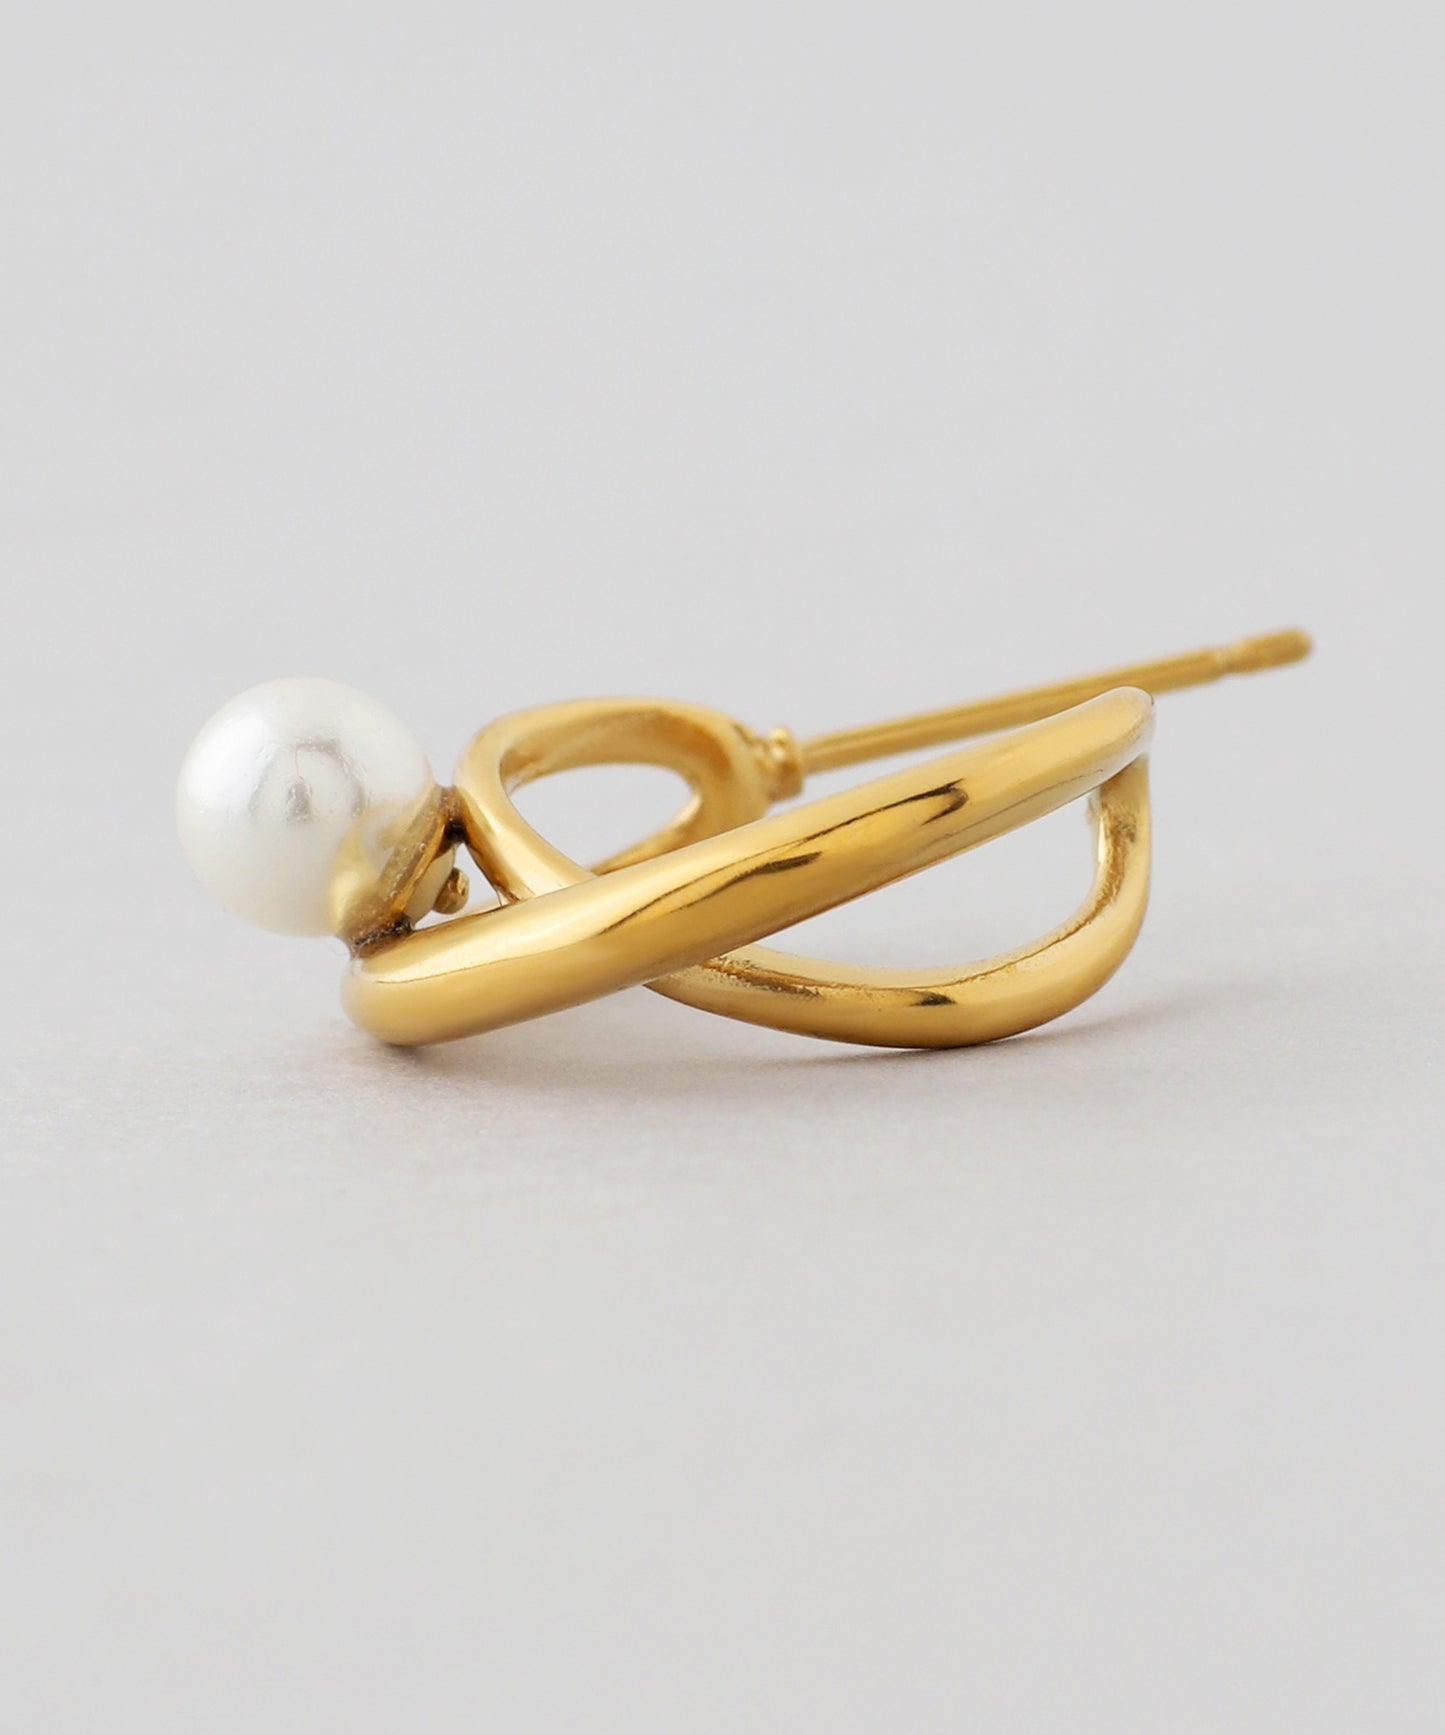 【Stainless Seel IP】Pearl × Cross Line Hoop Earrings